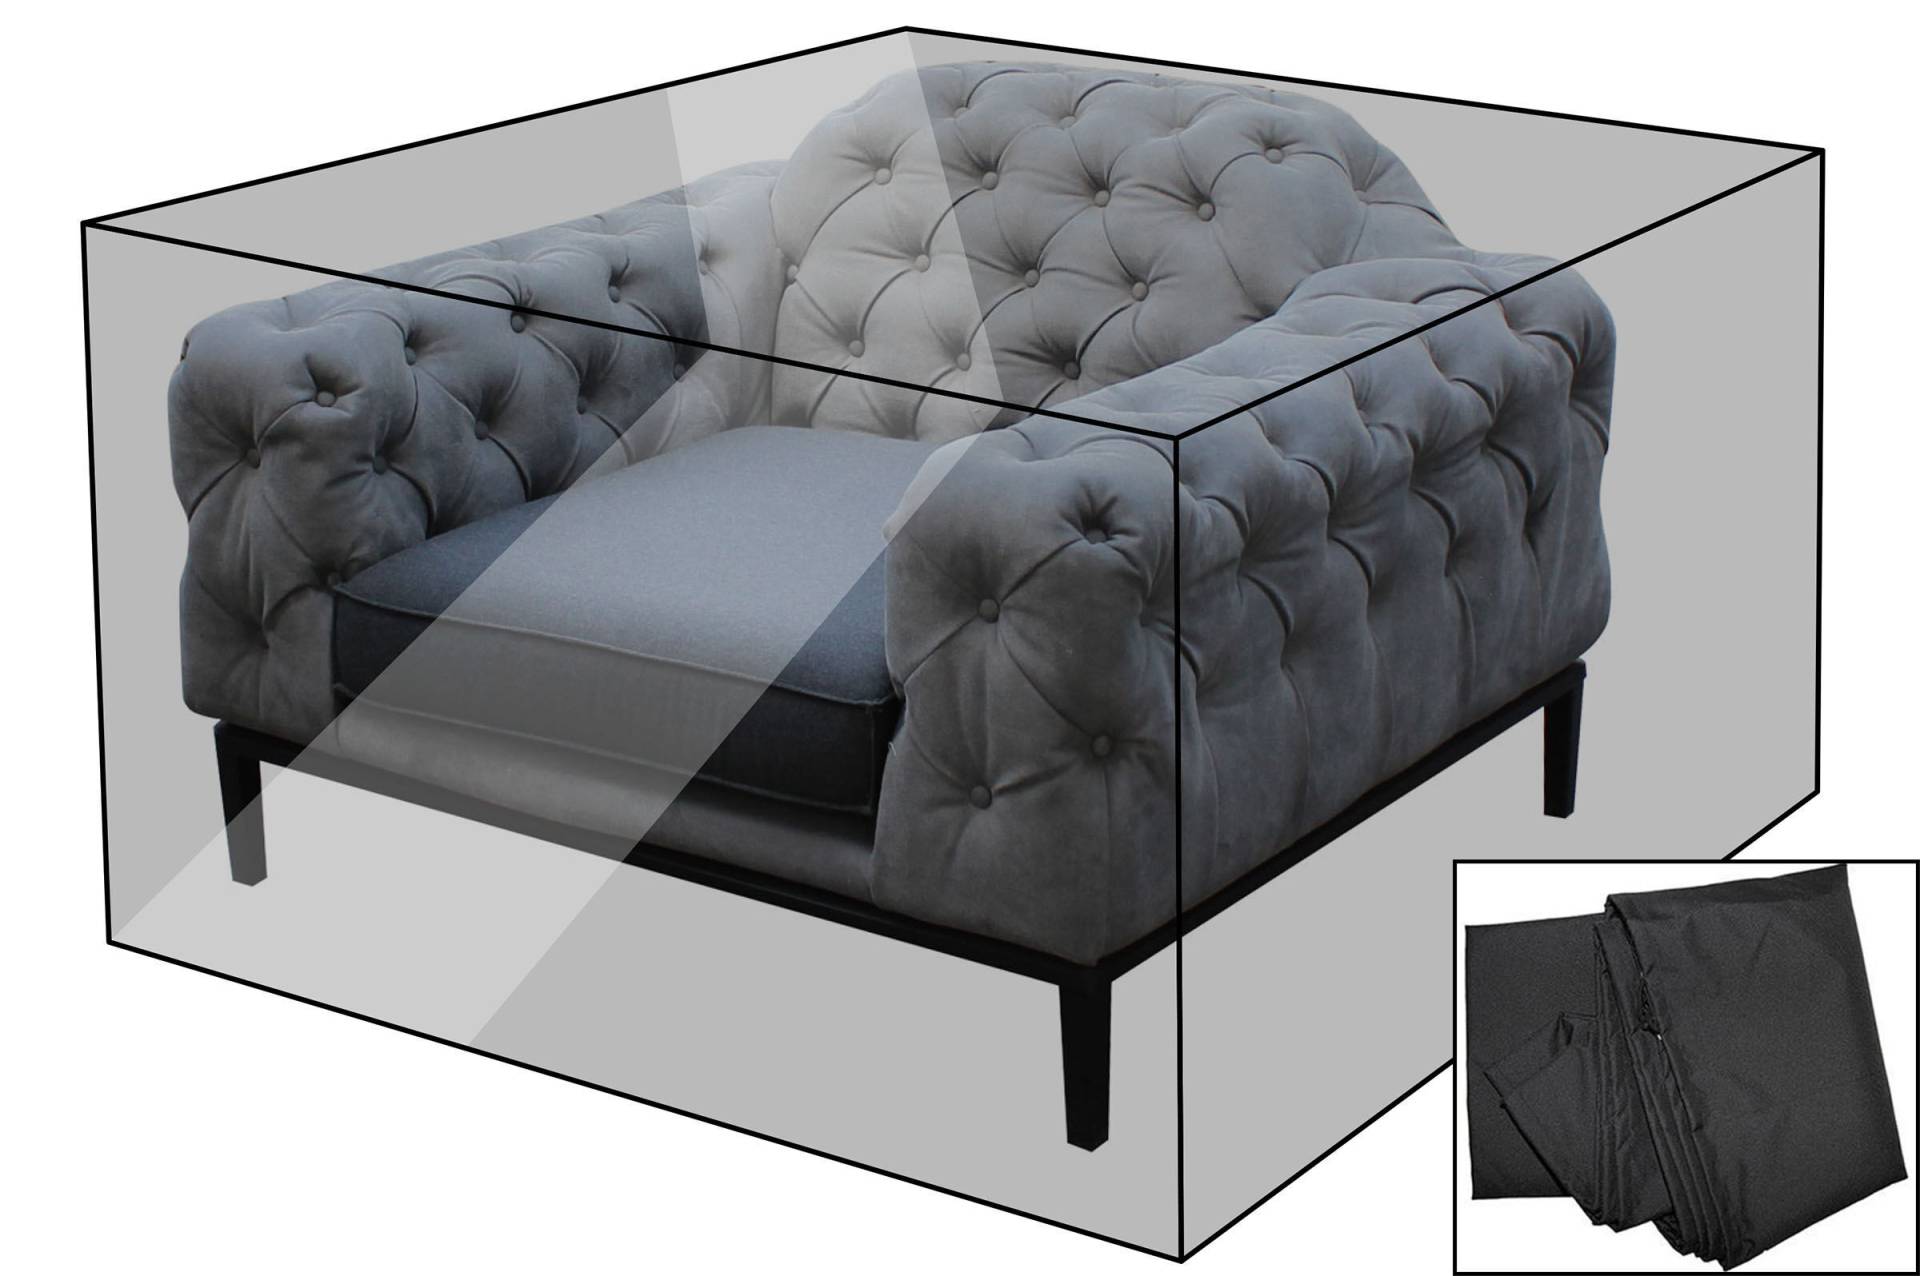 OUTFLEXX Premium Abdeckhaube für Sessel, schwarz, z.B. 21870, 120 x 107 x 75 cm, wasserbeständig, integriertes Zugband von OUTFLEXX